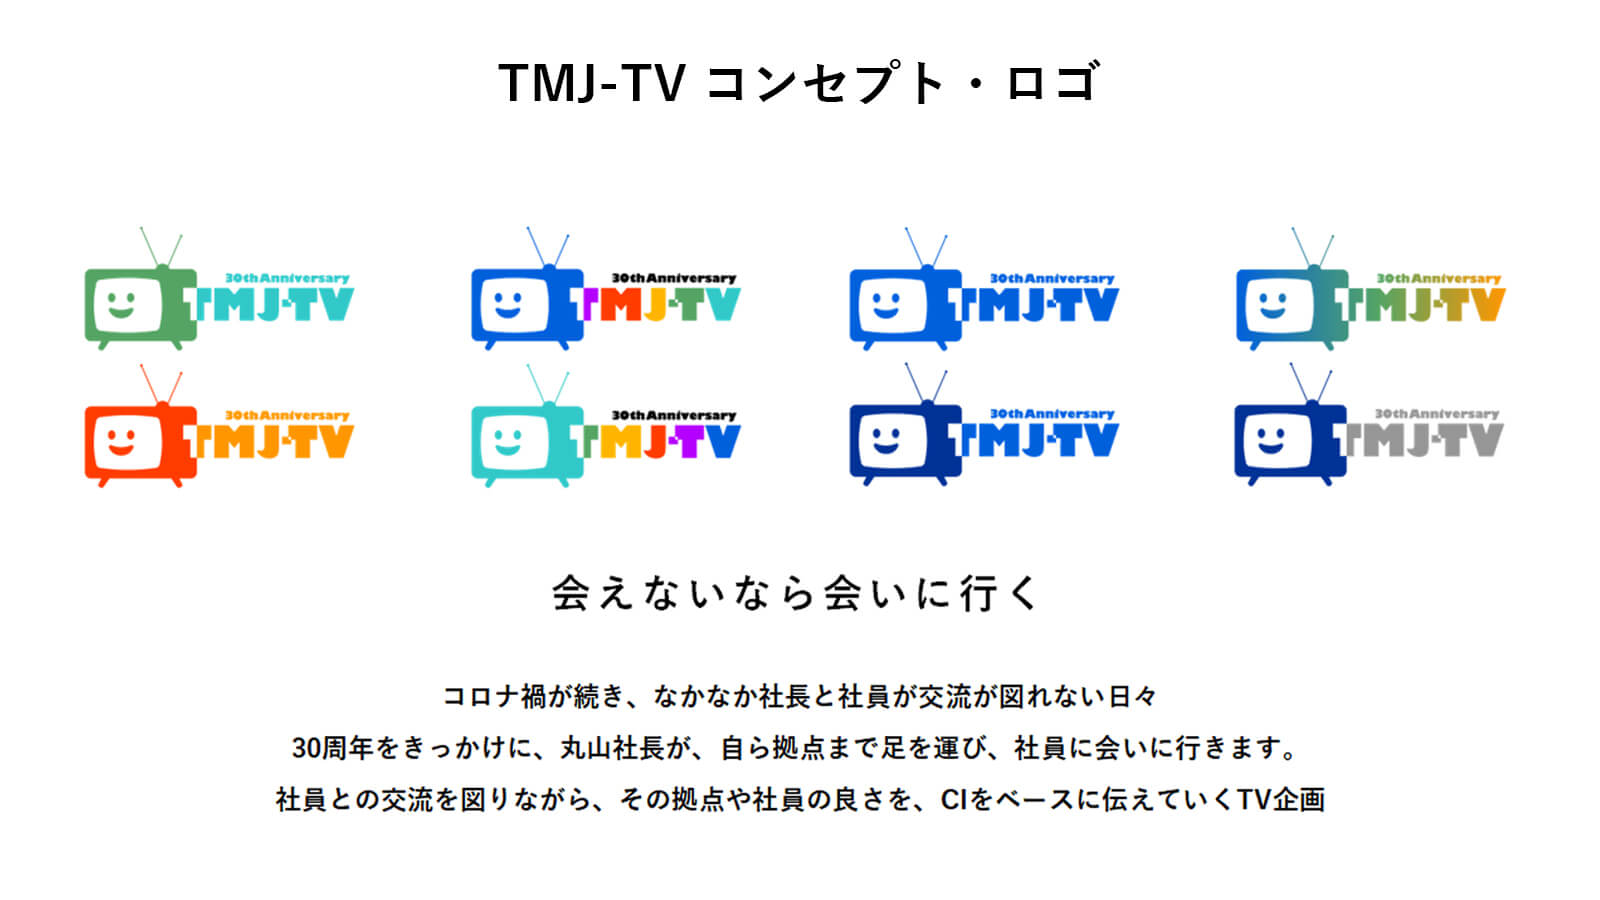 30周年動画企画「TMJ-TV」のコンセプト